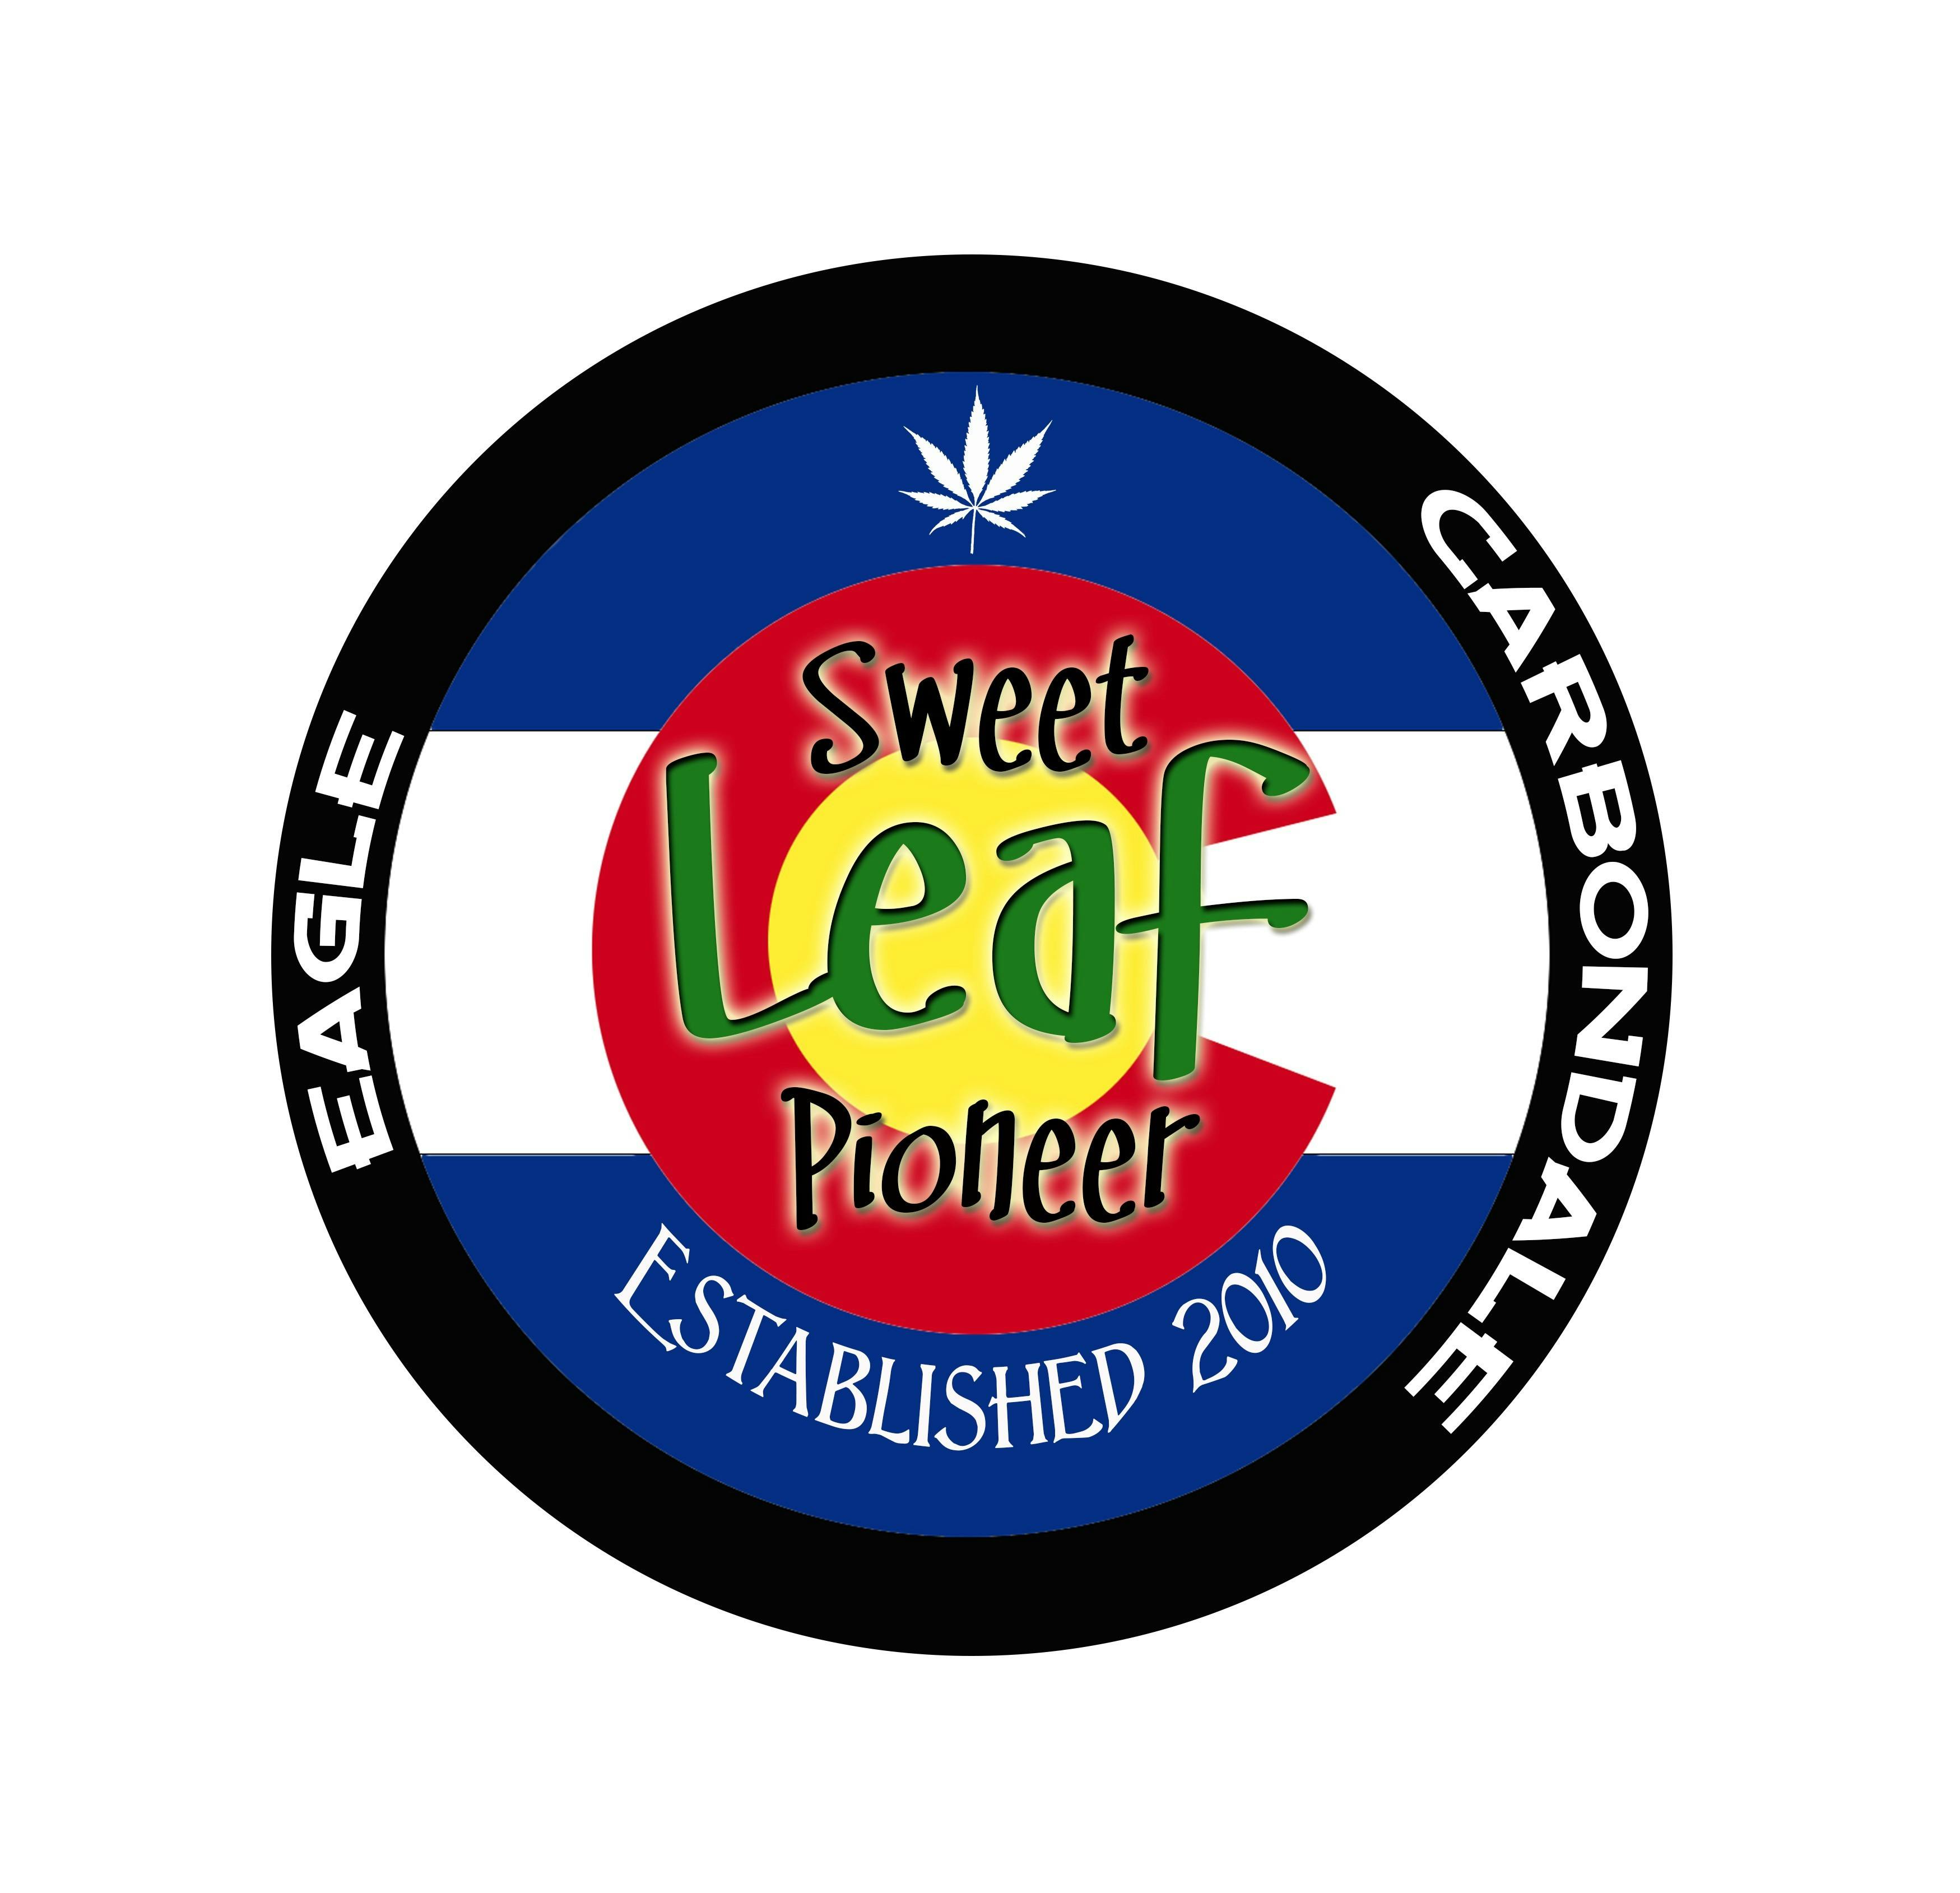 Sweet Leaf Pioneer